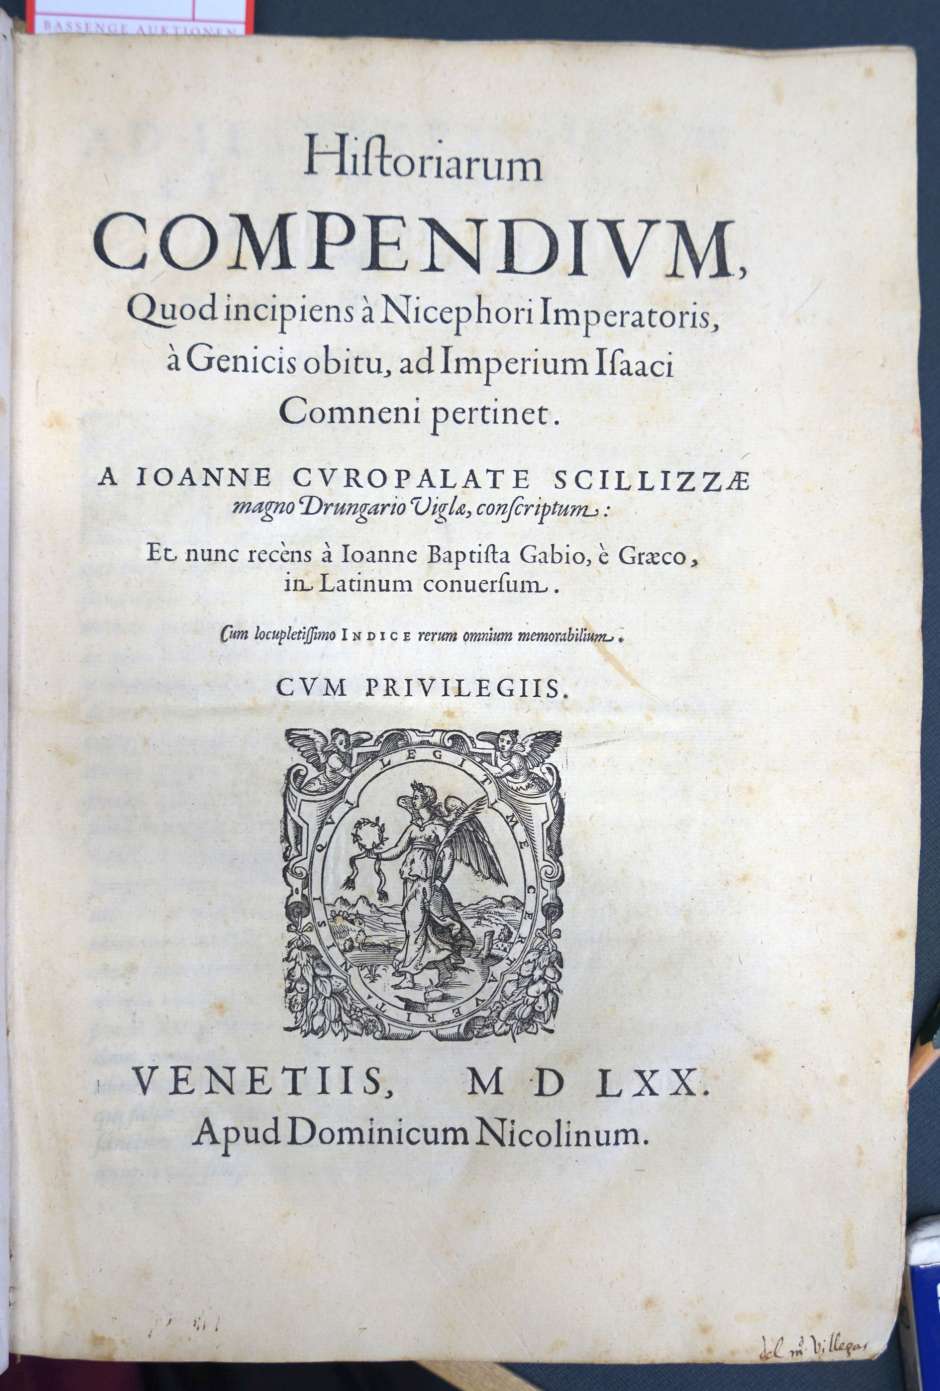 Lot 1187, Auction  115, Scylitza, Johannes, Historiarum compendium, 